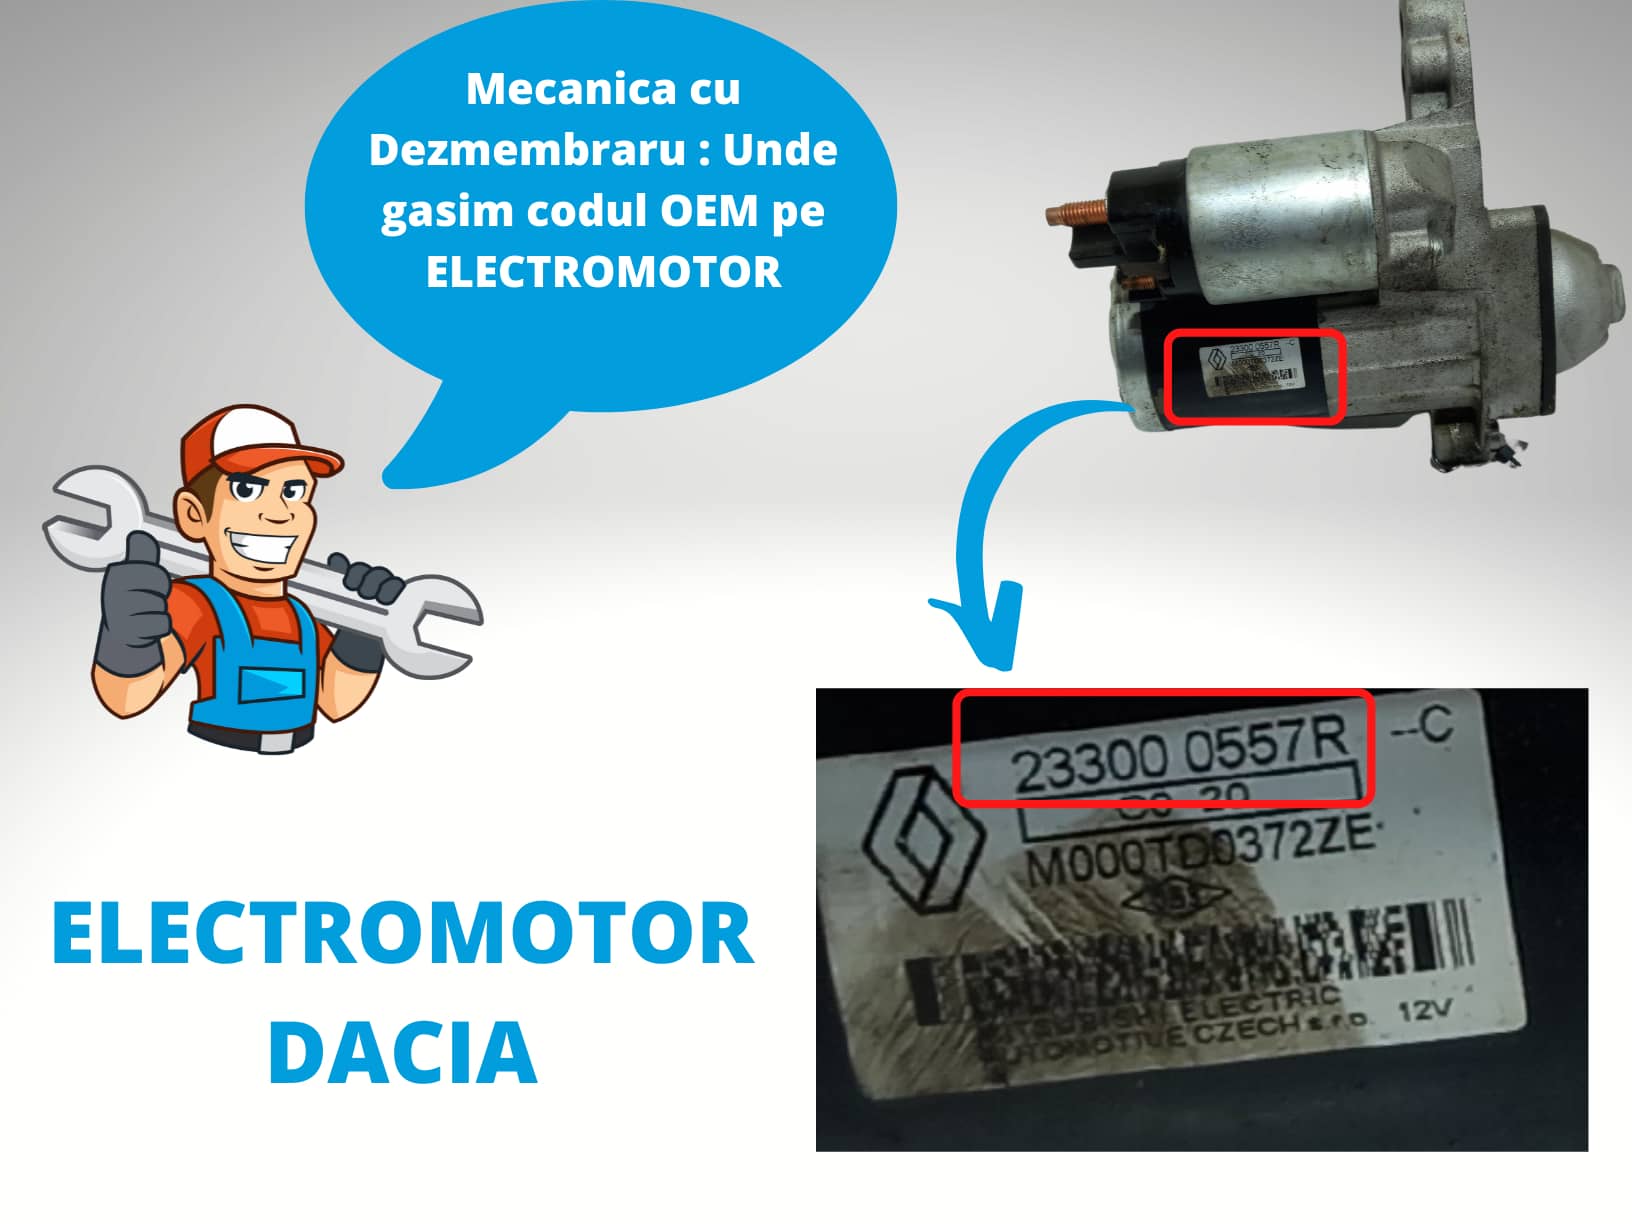 Electromotor Dacia